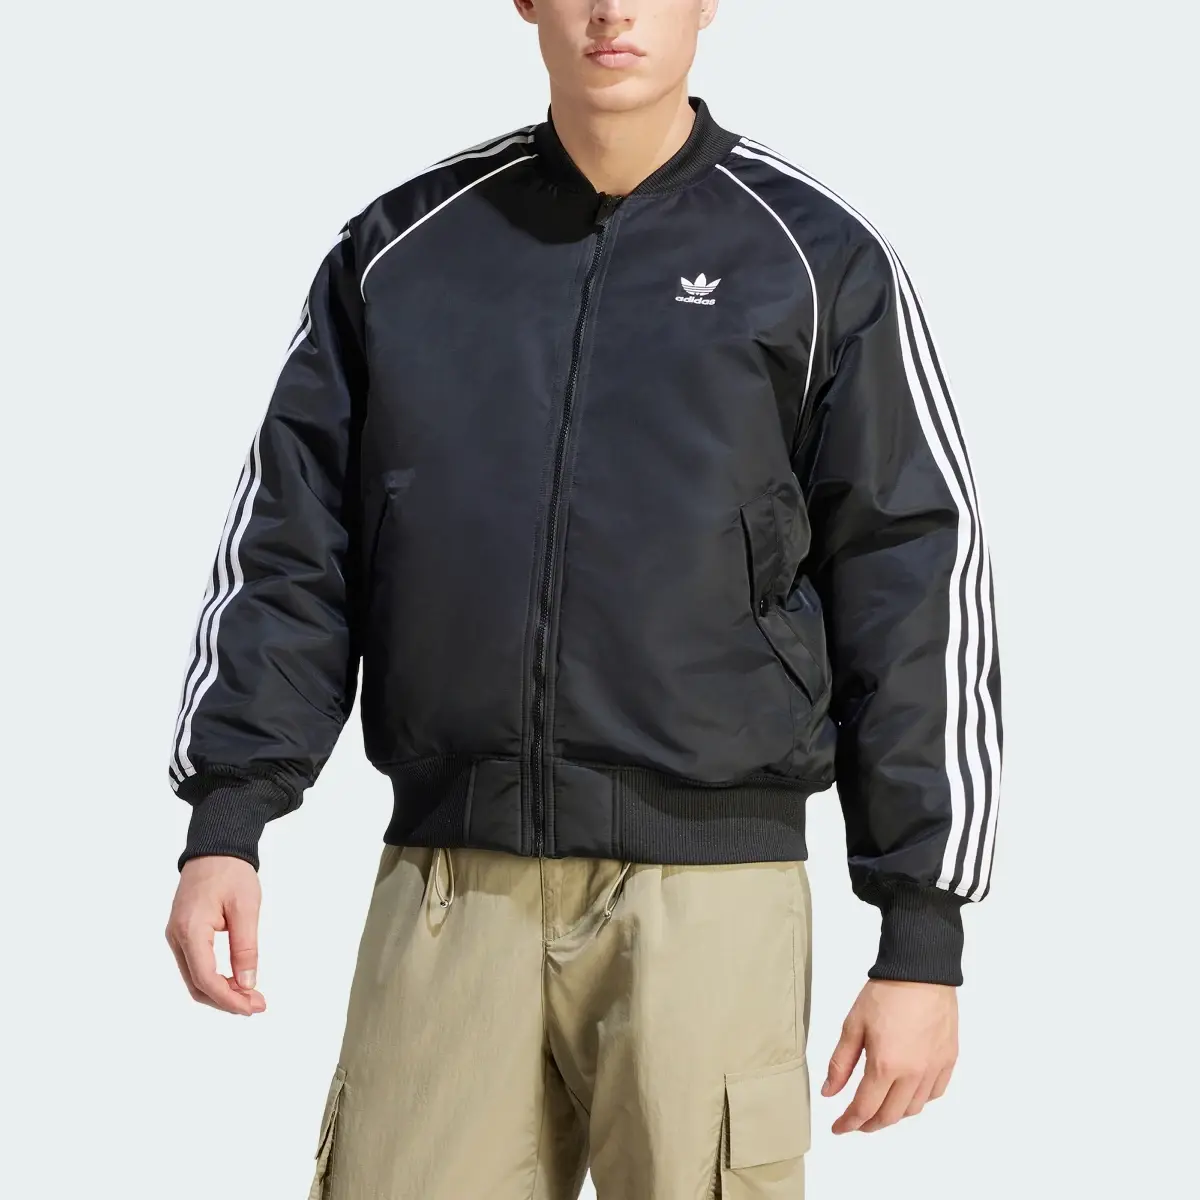 Adidas Premium Collegiate Jacket. 1